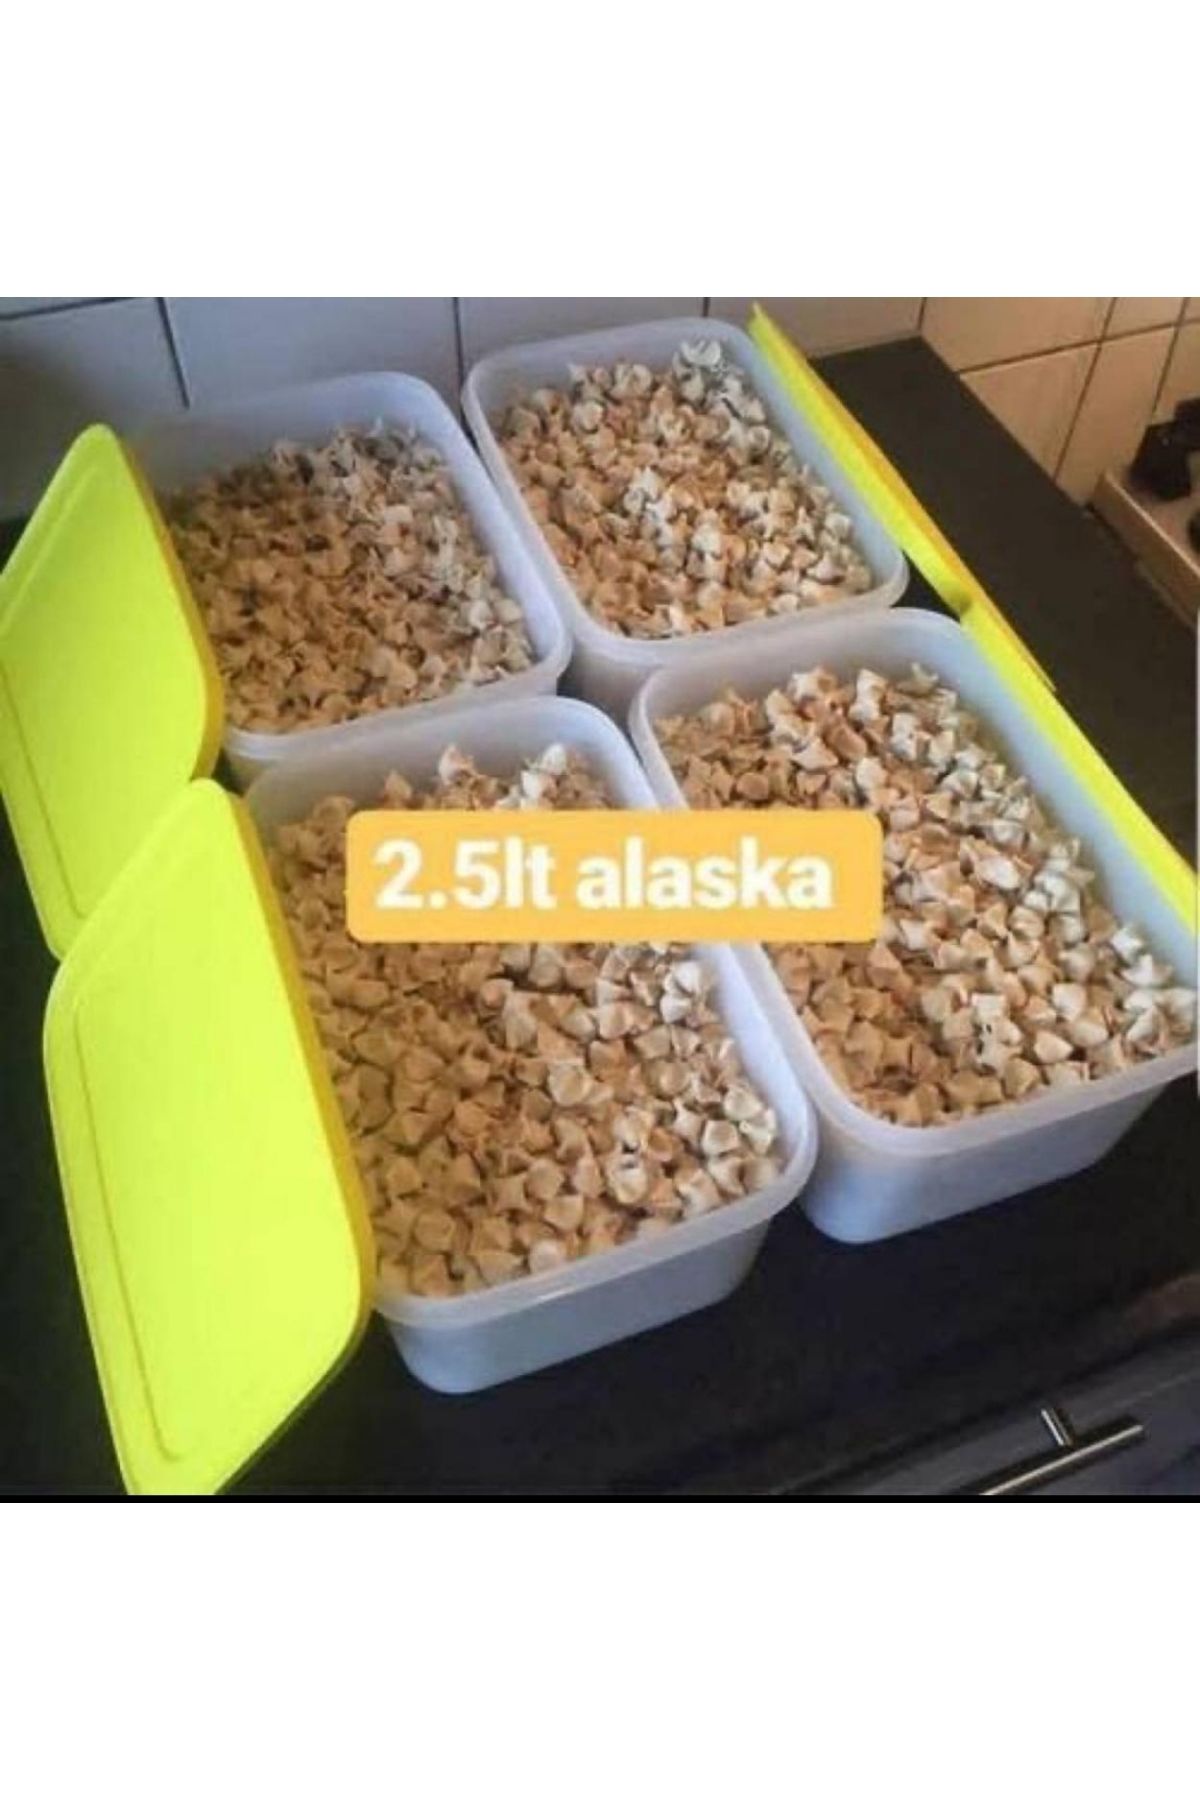 Tupperware 4 Adet 2.5 LT Alaska